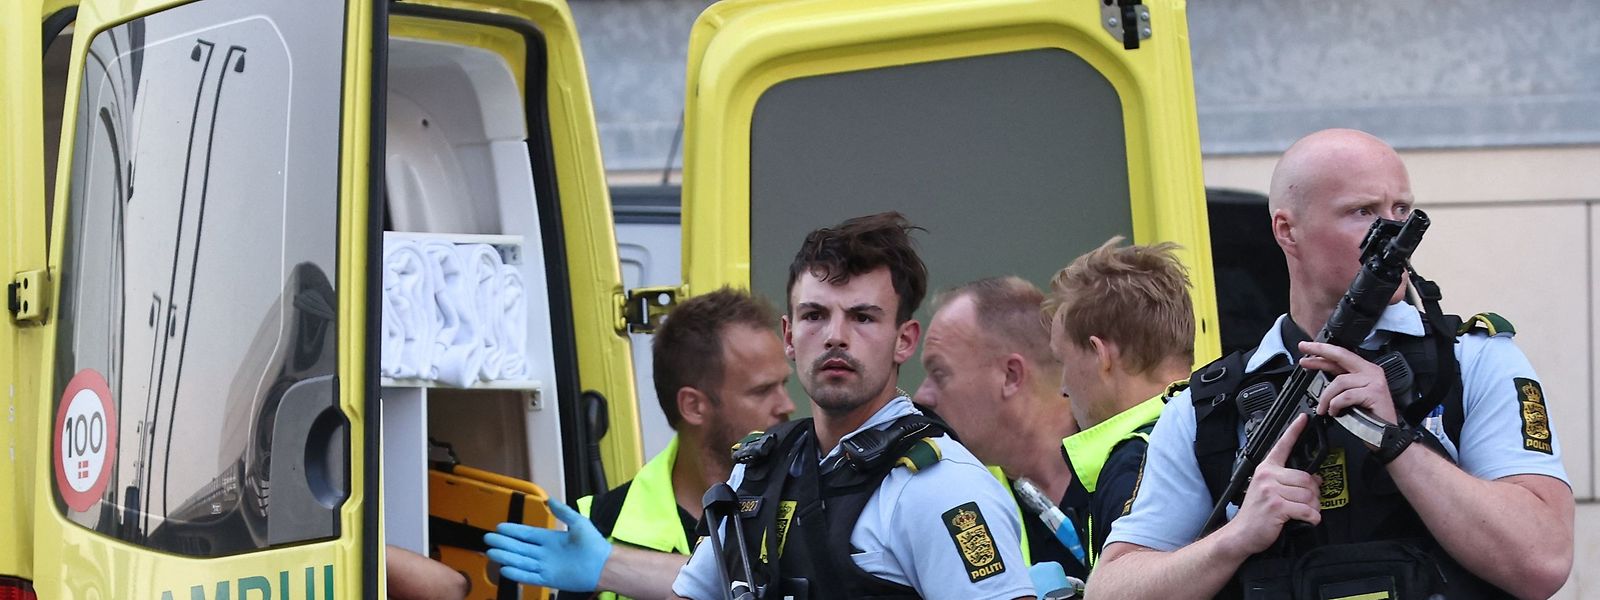 Selon des témoins interrogés par les médias danois, le suspect a tenté de piéger des victimes, disant par exemple que son arme était fausse pour les inciter à se rapprocher.